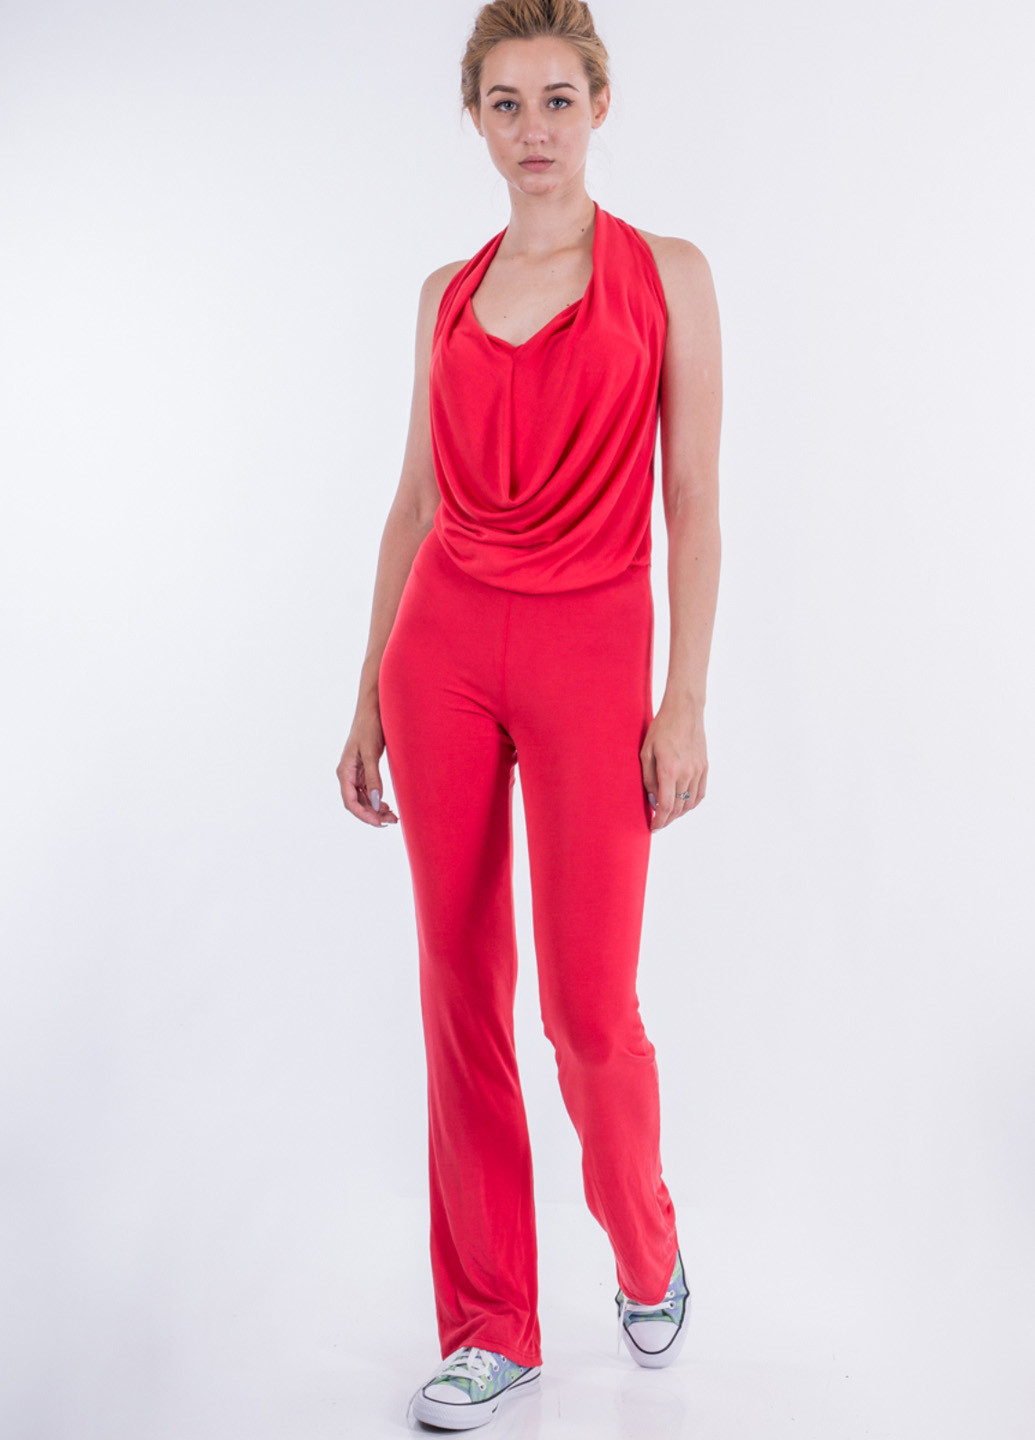 Комбінезон Sarah Chole комбінезон-брюки однотонний червоний кежуал модал, трикотаж